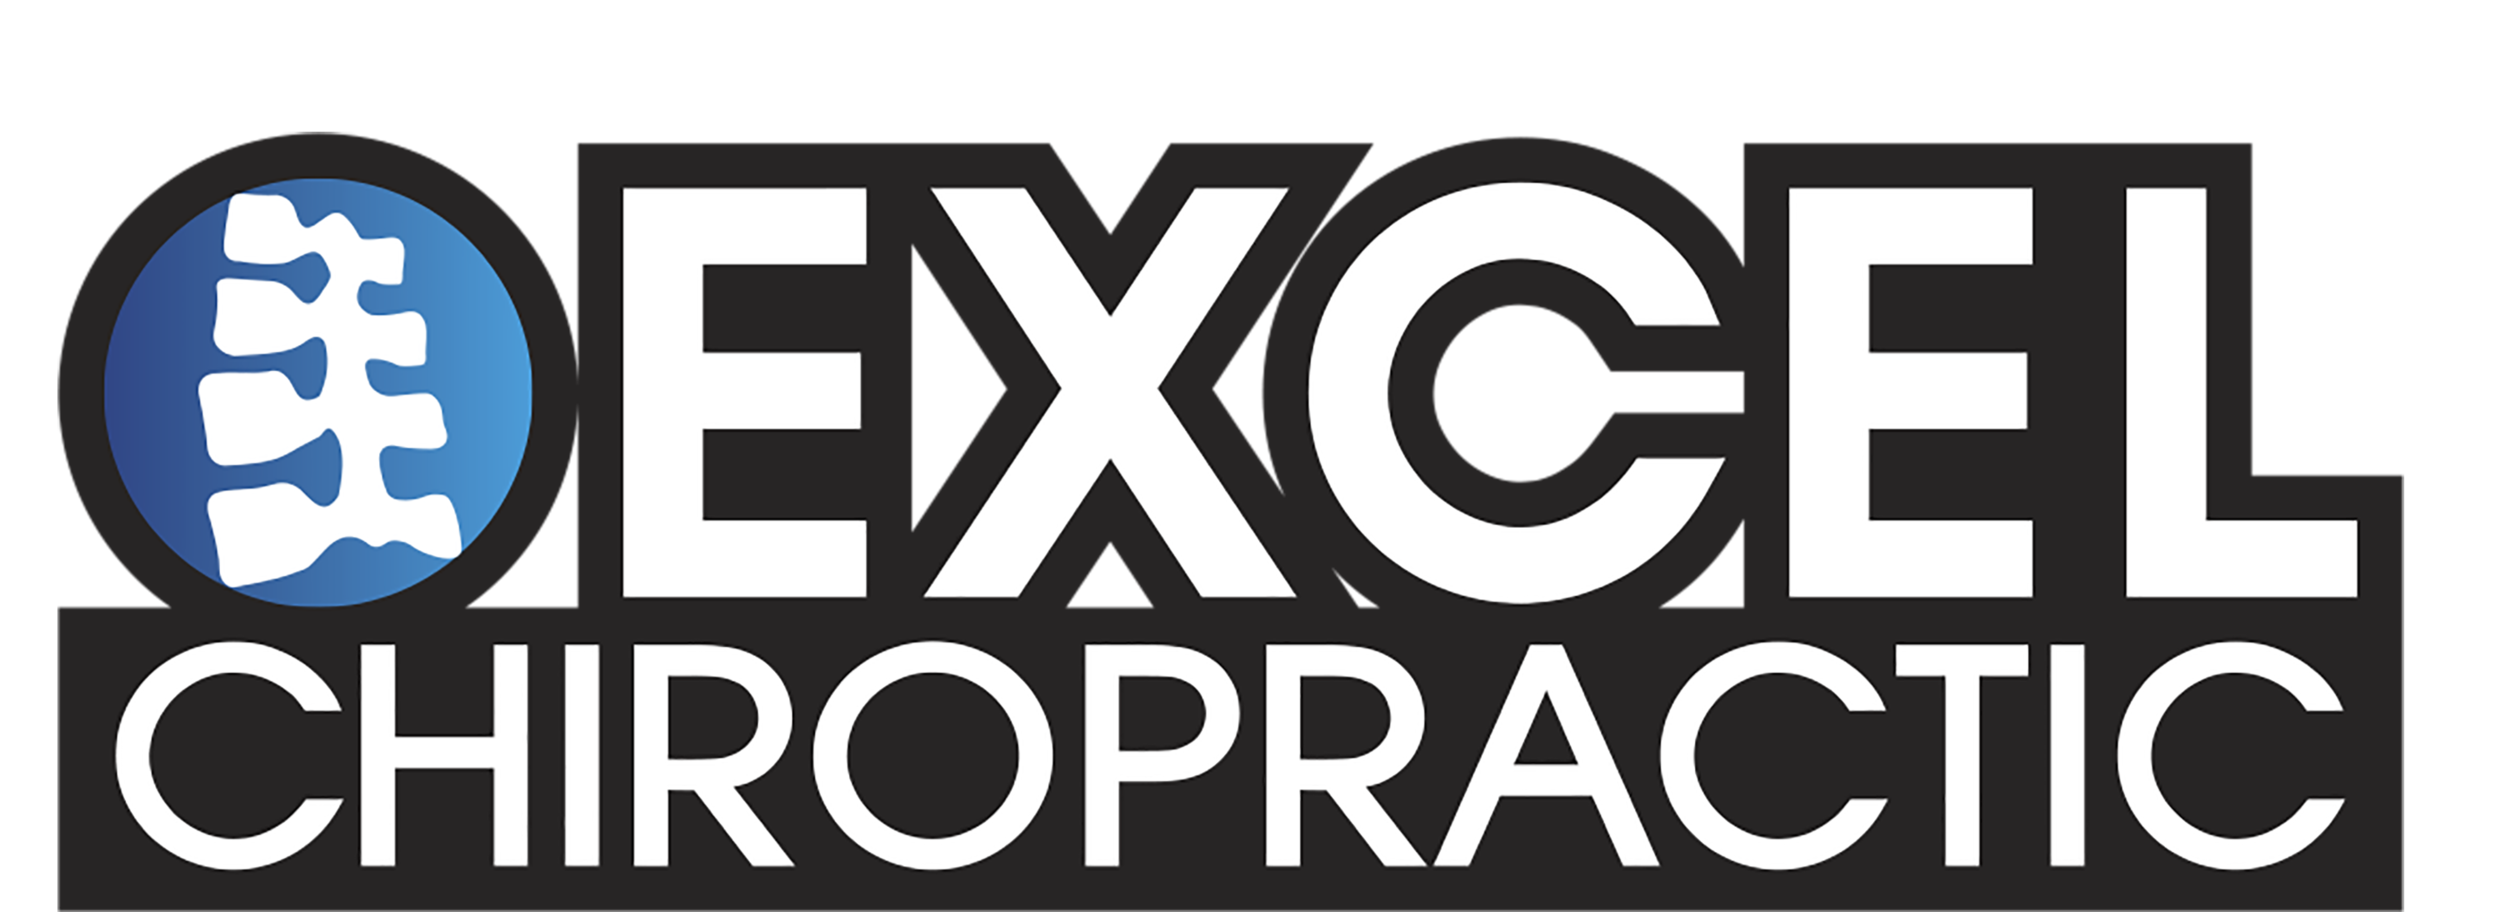 Excel Chiropractic - Gonstead Chiropractor in Dallas, Tx